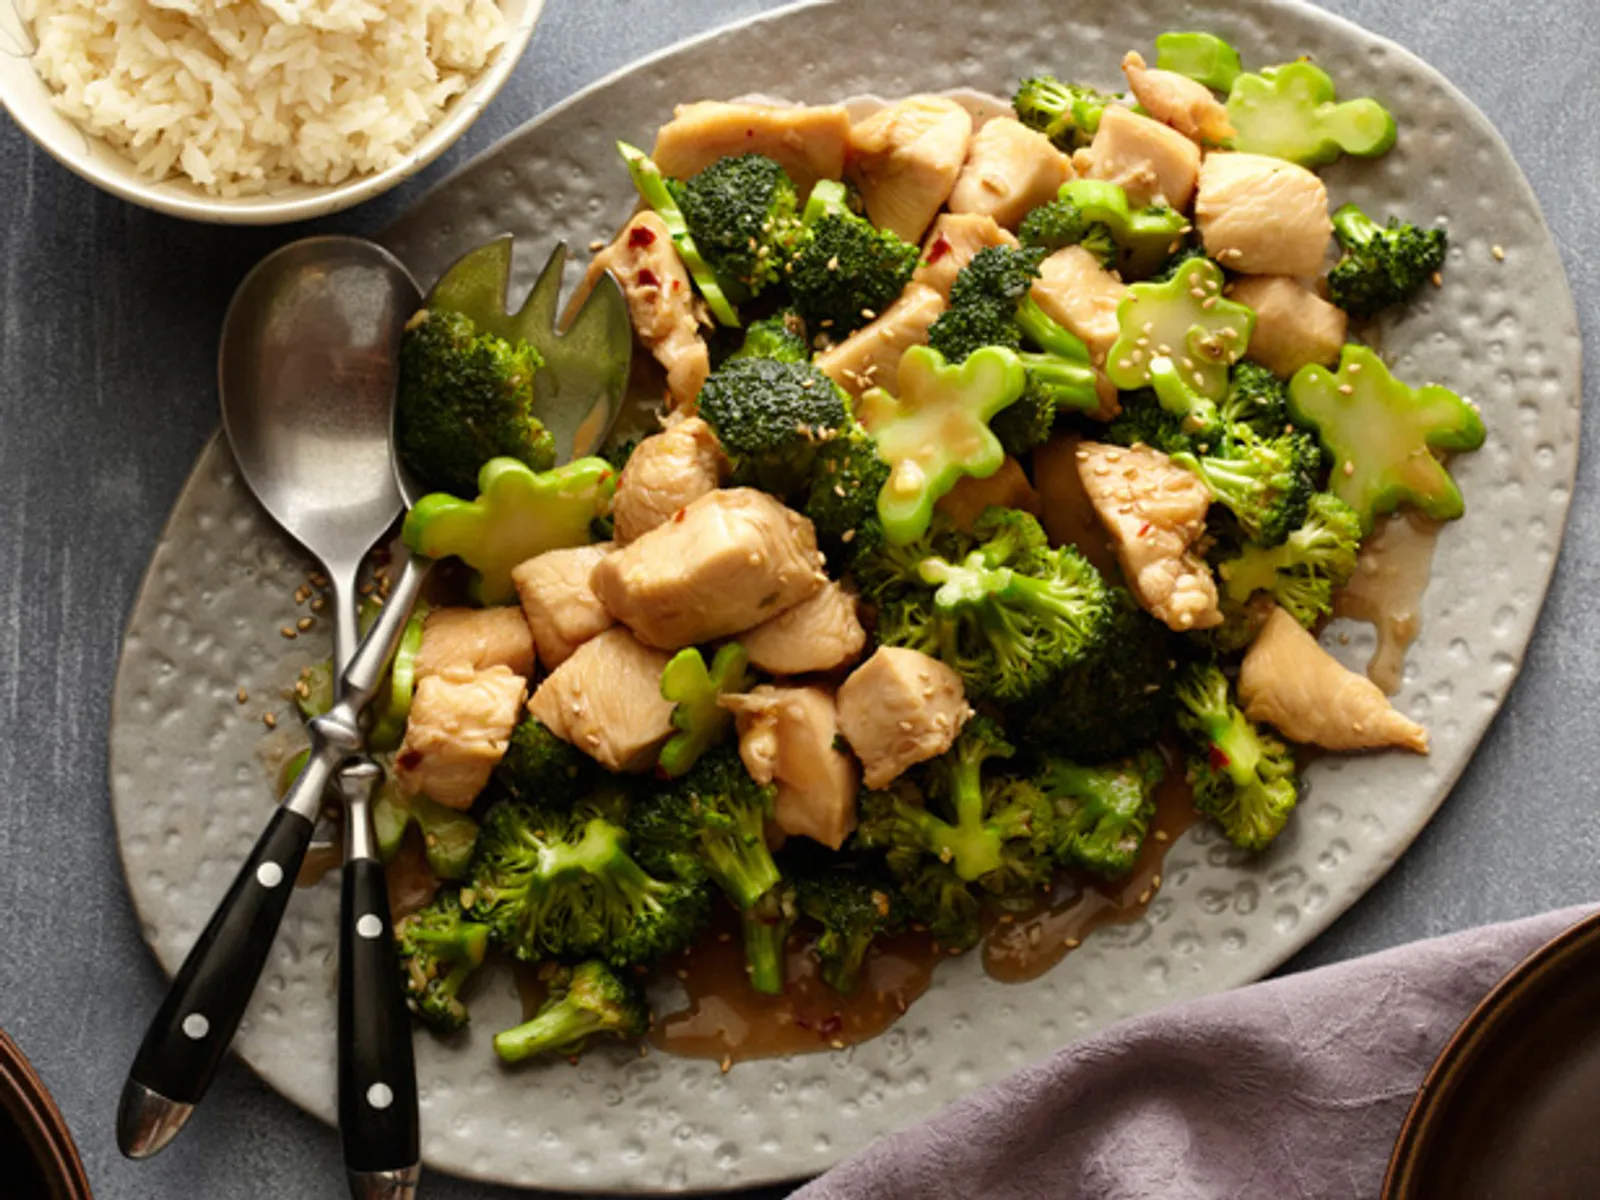 Resep Tumis Ayam Brokoli, Menu Mewah Sederhana Cocok Bagi Anak Kos